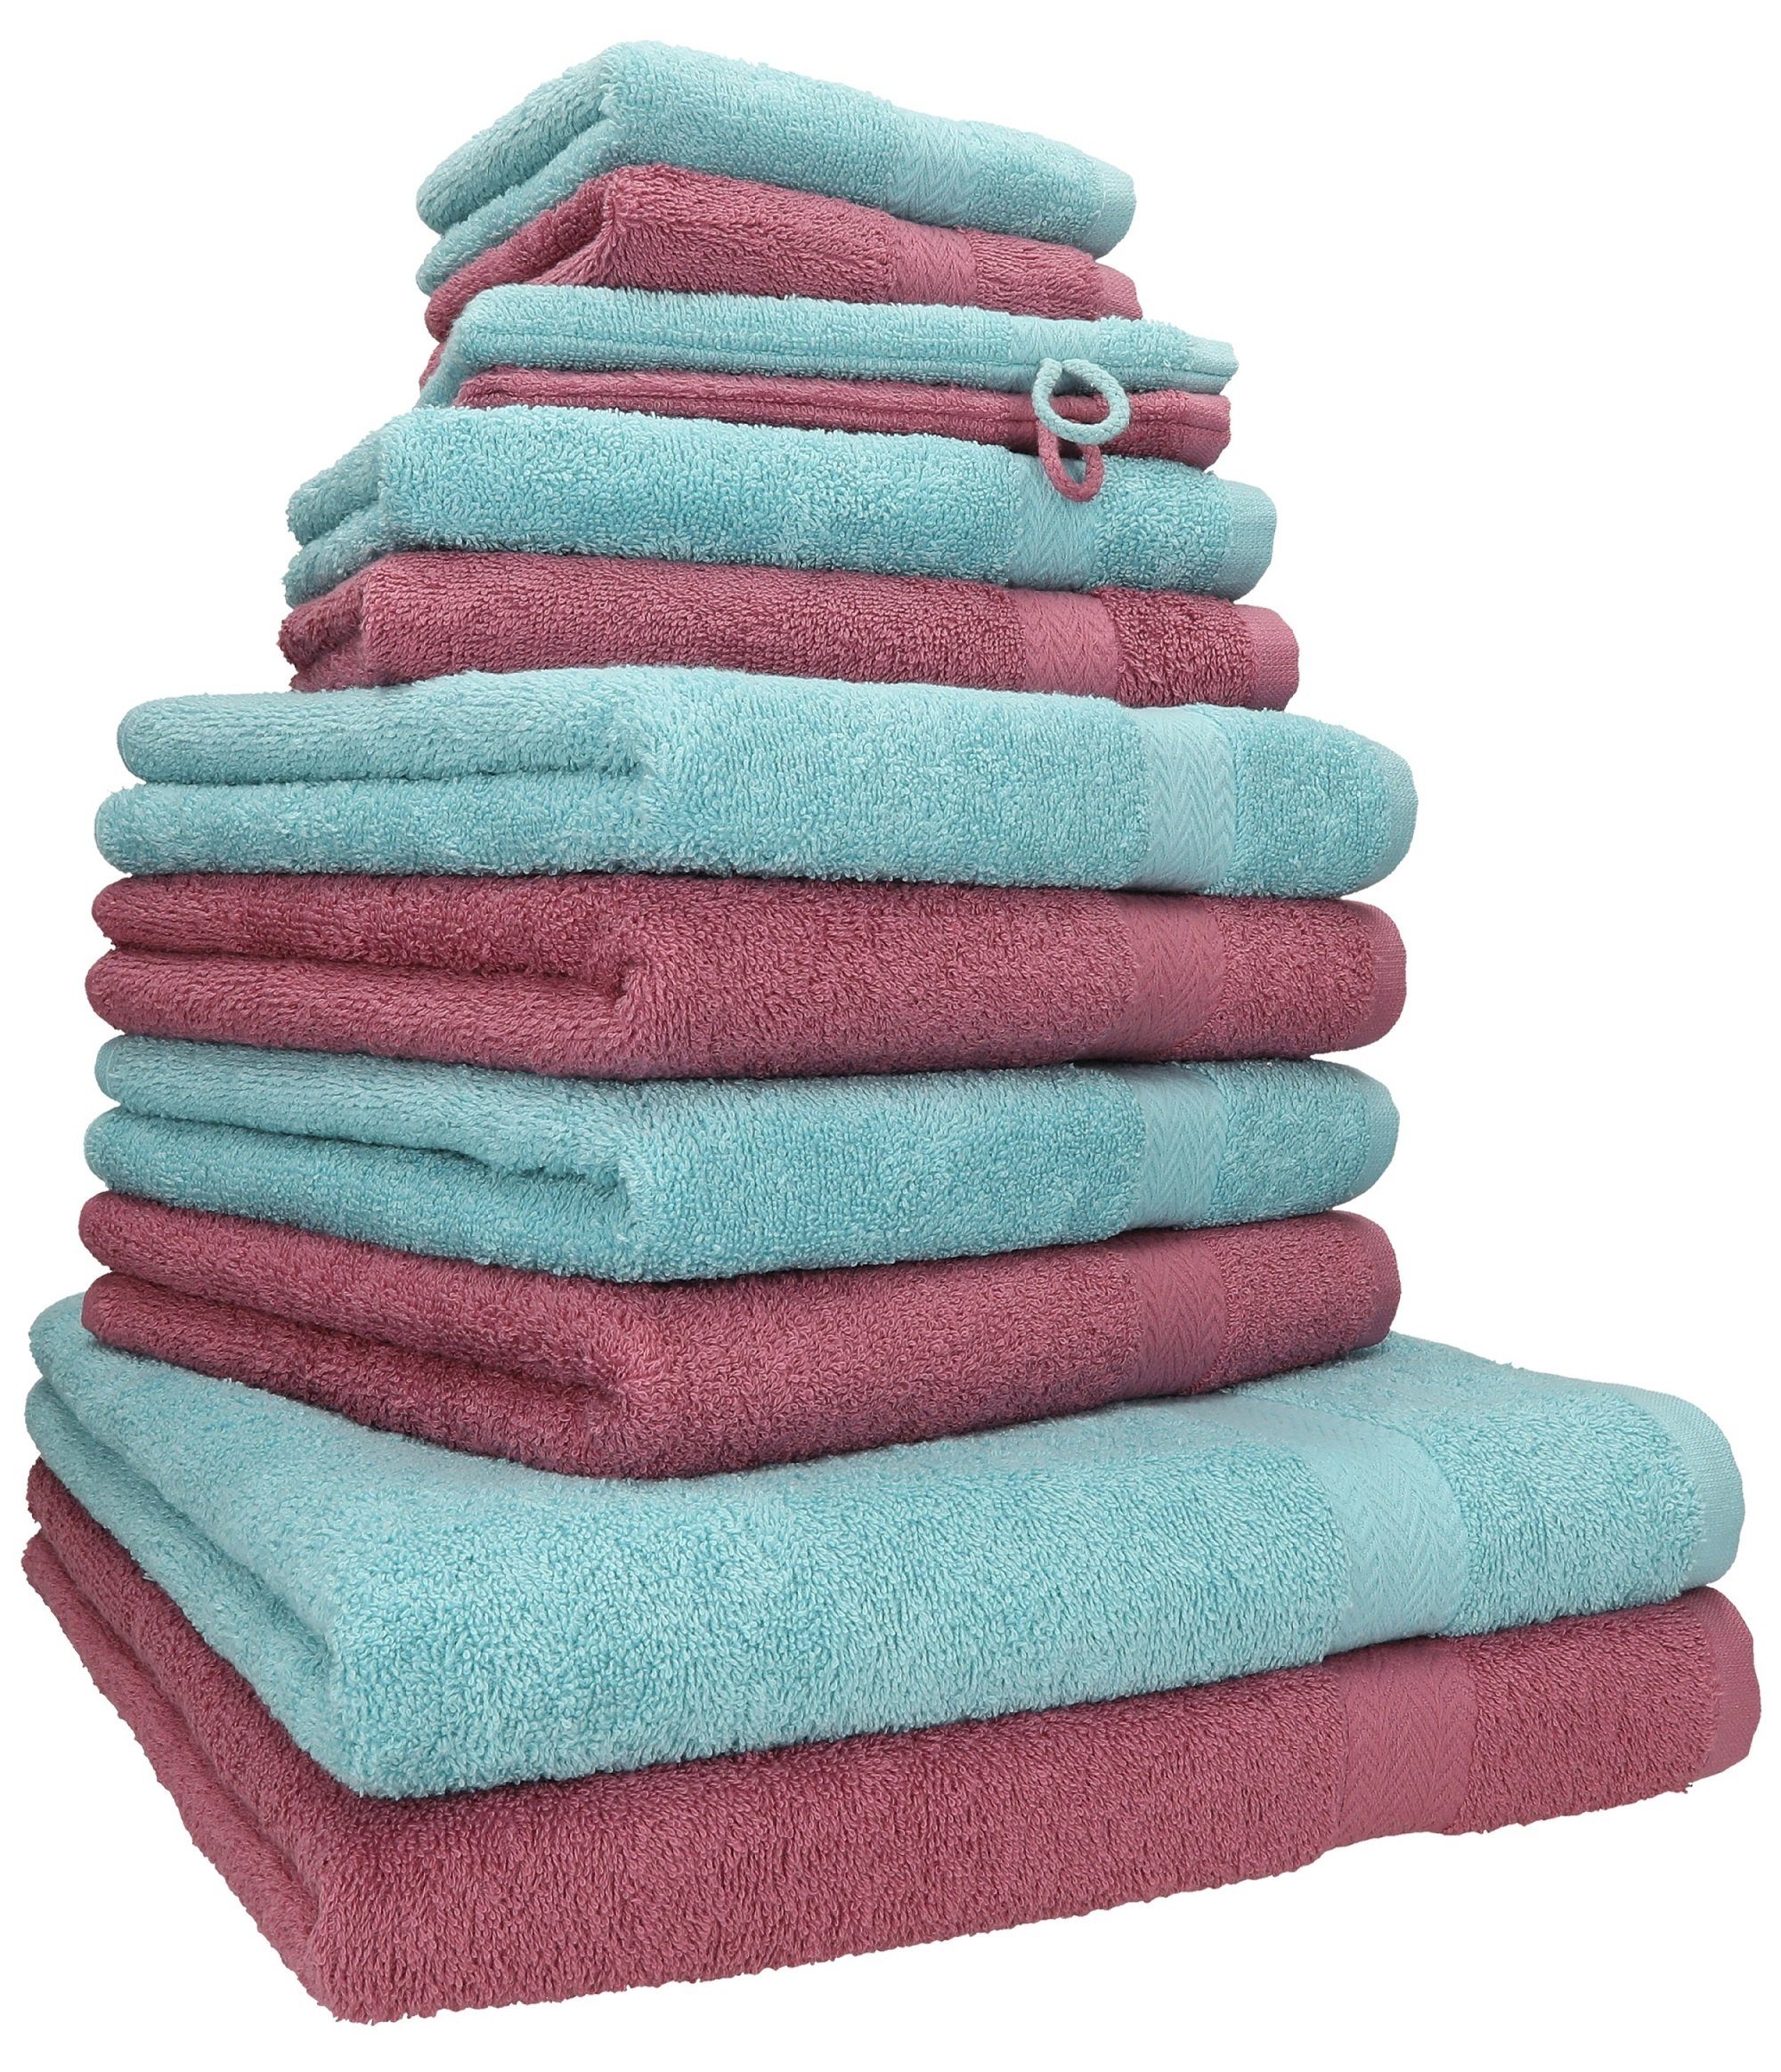 Betz Handtuch Set 12-TLG. Handtuch Set Premium 100% Baumwolle 2 Duschtücher 4 Handtücher 2 Gästetücher 2 Seiftücher 2 Waschhandschuhe Farbe Beere/Ocean, 100% Baumwolle, (12-tlg)